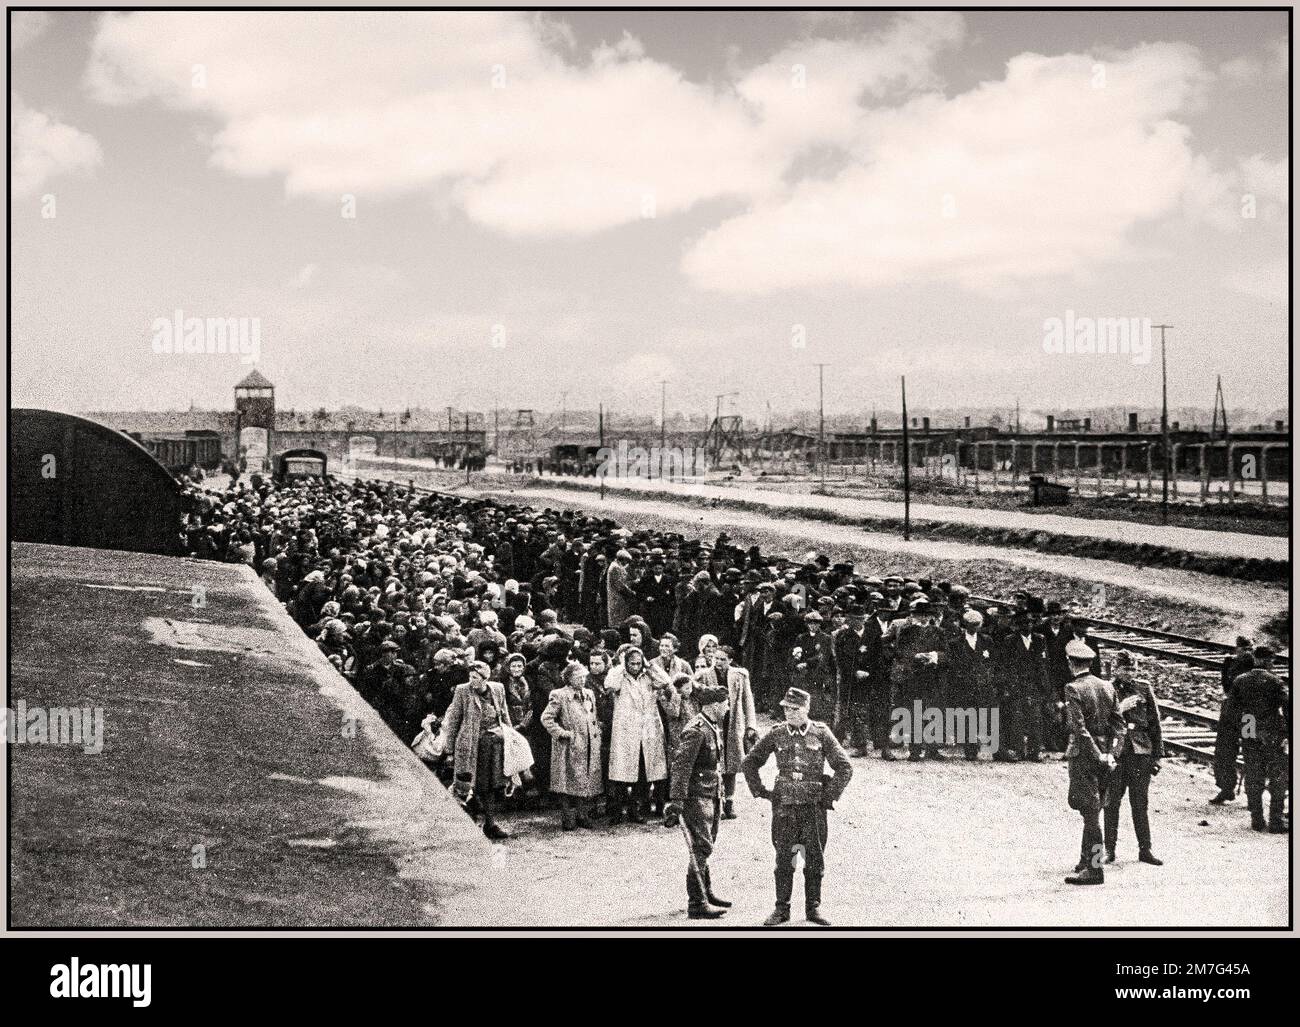 ARRIVO DEI PRIGIONIERI DELL'OLOCAUSTO AD AUSCHWITZ-BIRKENAU - Una visione di un inferno sulla terra. 1944, i nazisti 'classificazione' (vita o morte) ignari prigionieri sul convitto ferroviario all'esterno dell'ingresso del campo di sterminio di Auschwitz-Birkenau. Il famigerato campo di Auschwitz fu iniziato per ordine di Adolf Hitler nel 1940 durante l'occupazione della Polonia da parte della Germania nazista durante la guerra mondiale 2, ulteriormente abilitato da Heinrich Luitpold Himmler il Reichsführer dello Schutzstaffel, e membro principale del Partito nazista di Germania Foto Stock